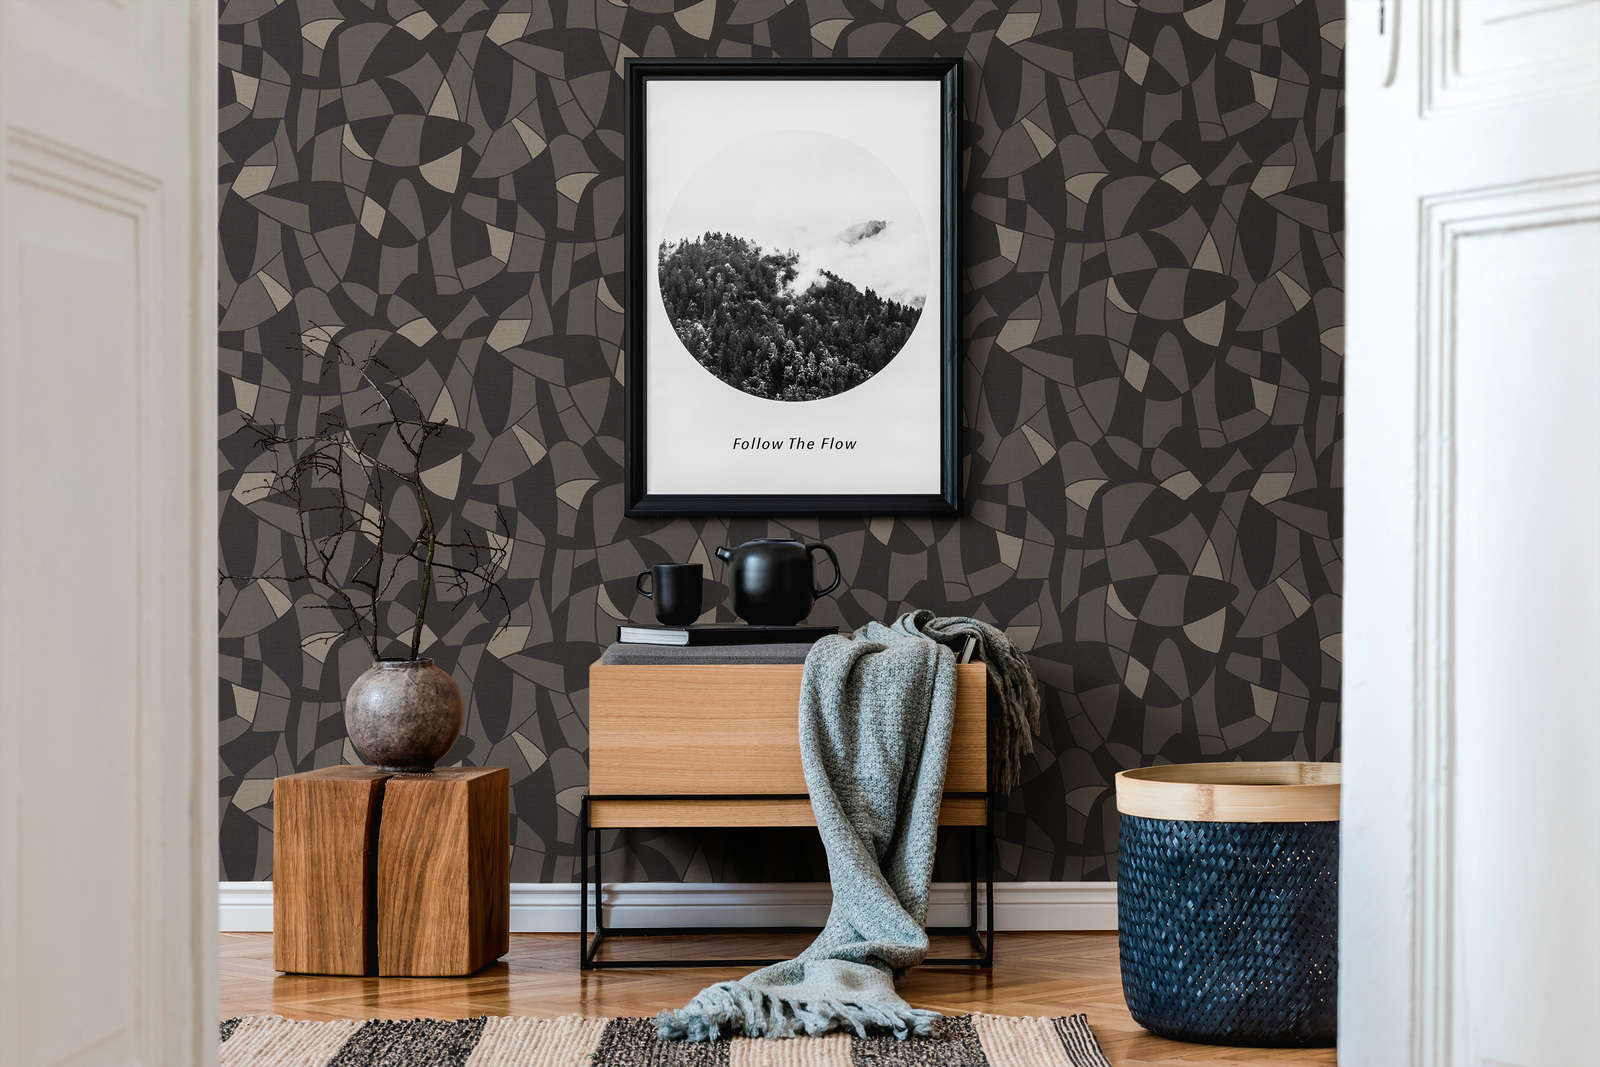             Non-woven wallpaper in geometric style - black
        